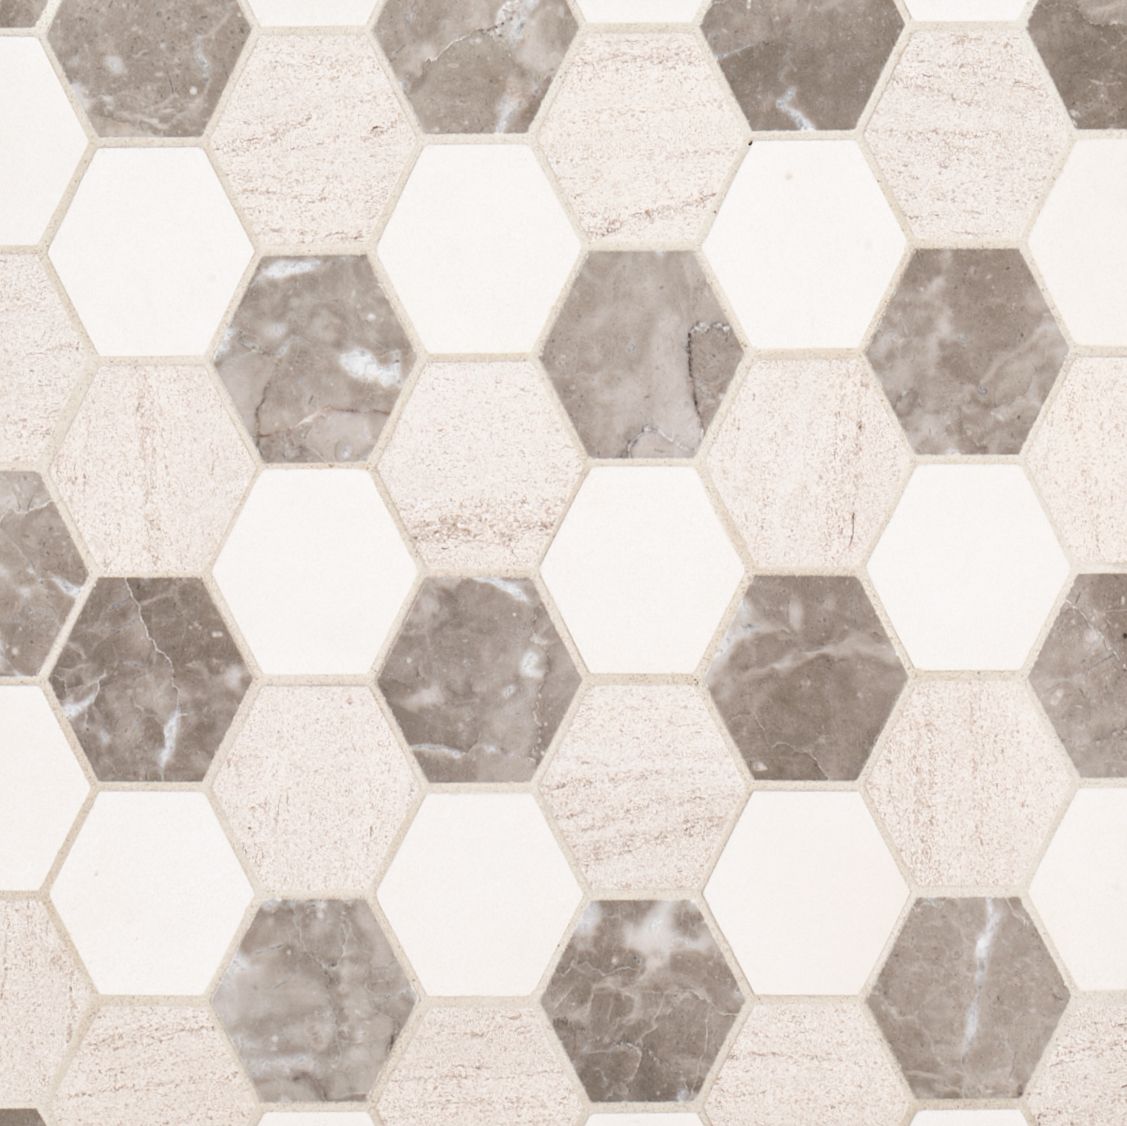 Hexagon Mixed Medley Mosaic 11" x 12.4375"